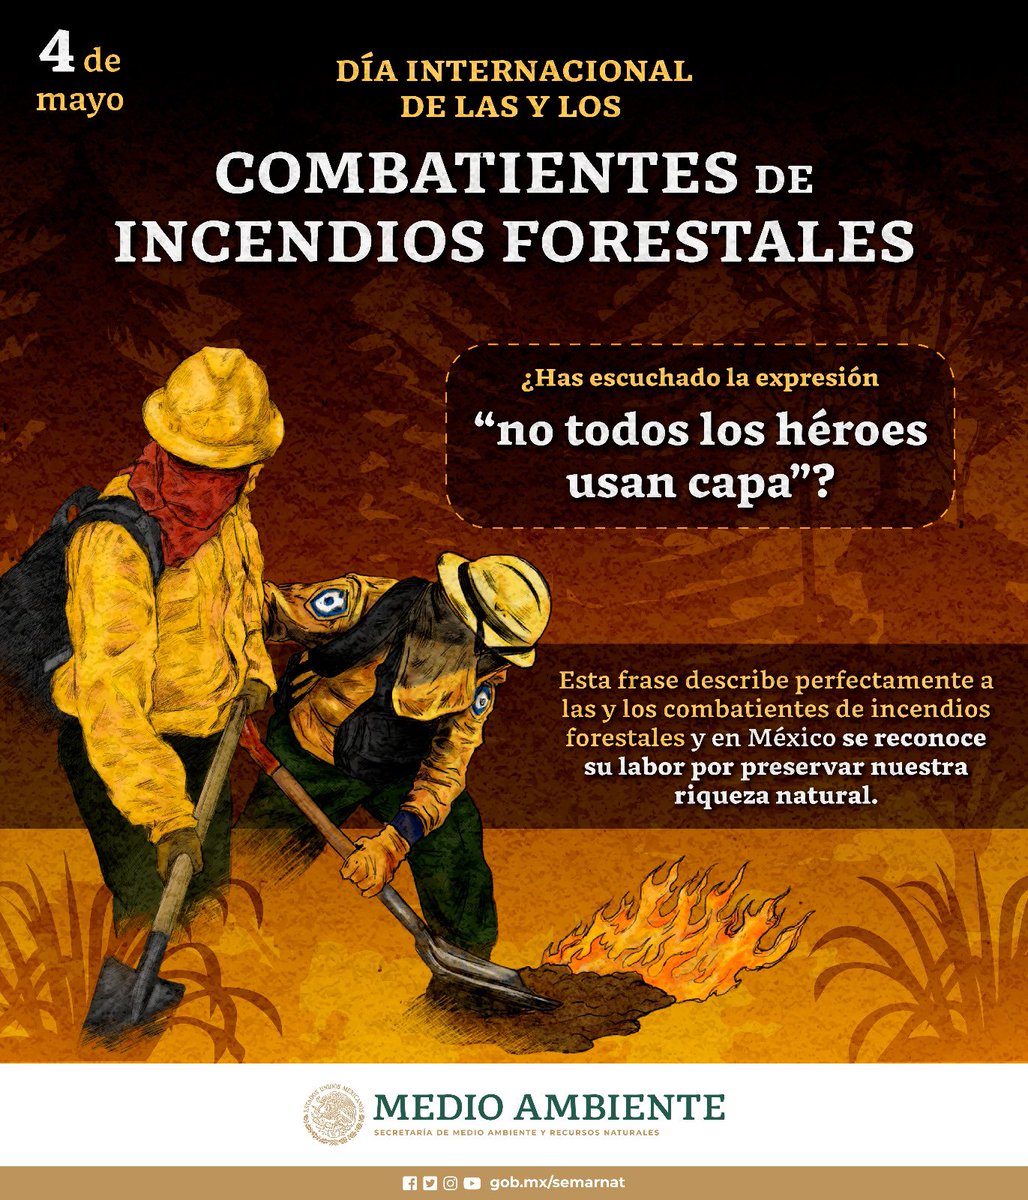 ✨ Este día, reconocemos el valor y la entrega de las y los #combatientes de #IncendiosForestales. Su labor es esencial para proteger los bosques y áreas naturales de nuestro país. 🌳🌲👩🏽‍🚒👨🏽‍🚒🔥 A todas y todos, ¡Gracias! 👏🏽